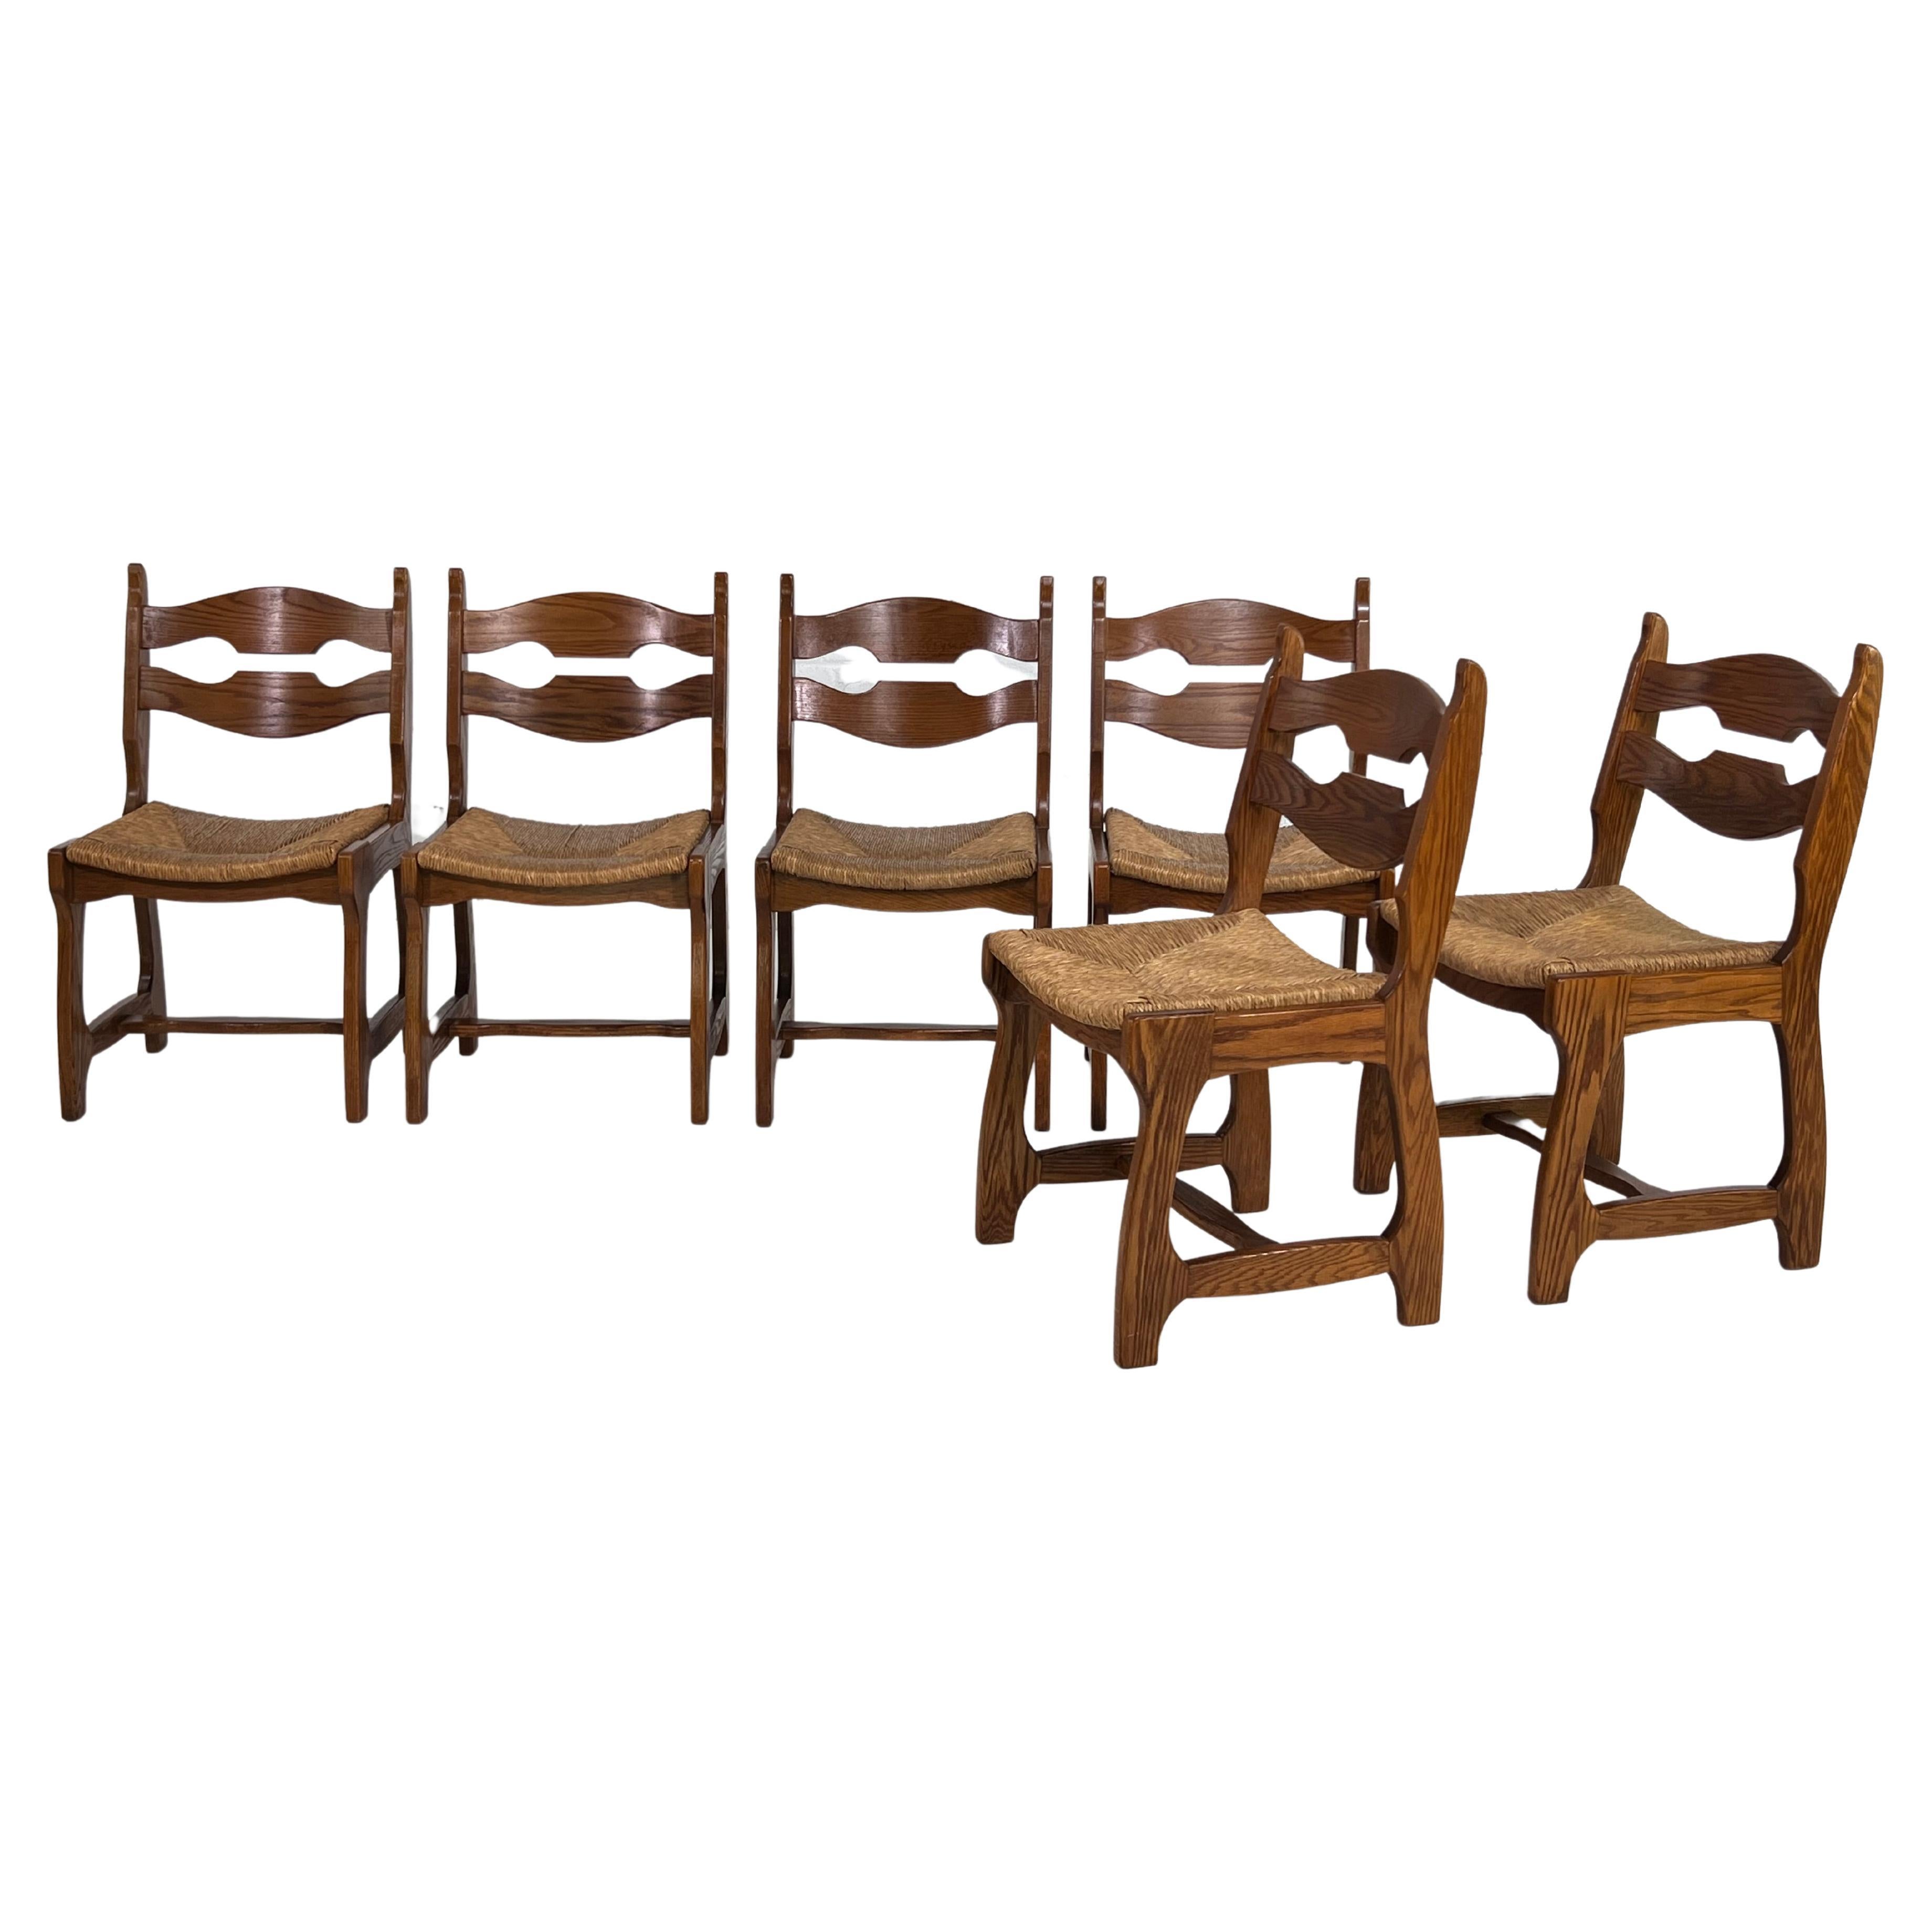 Chaises en bois de chêne et paille tressée Design des années 1950 Ensemble de 6 chaises